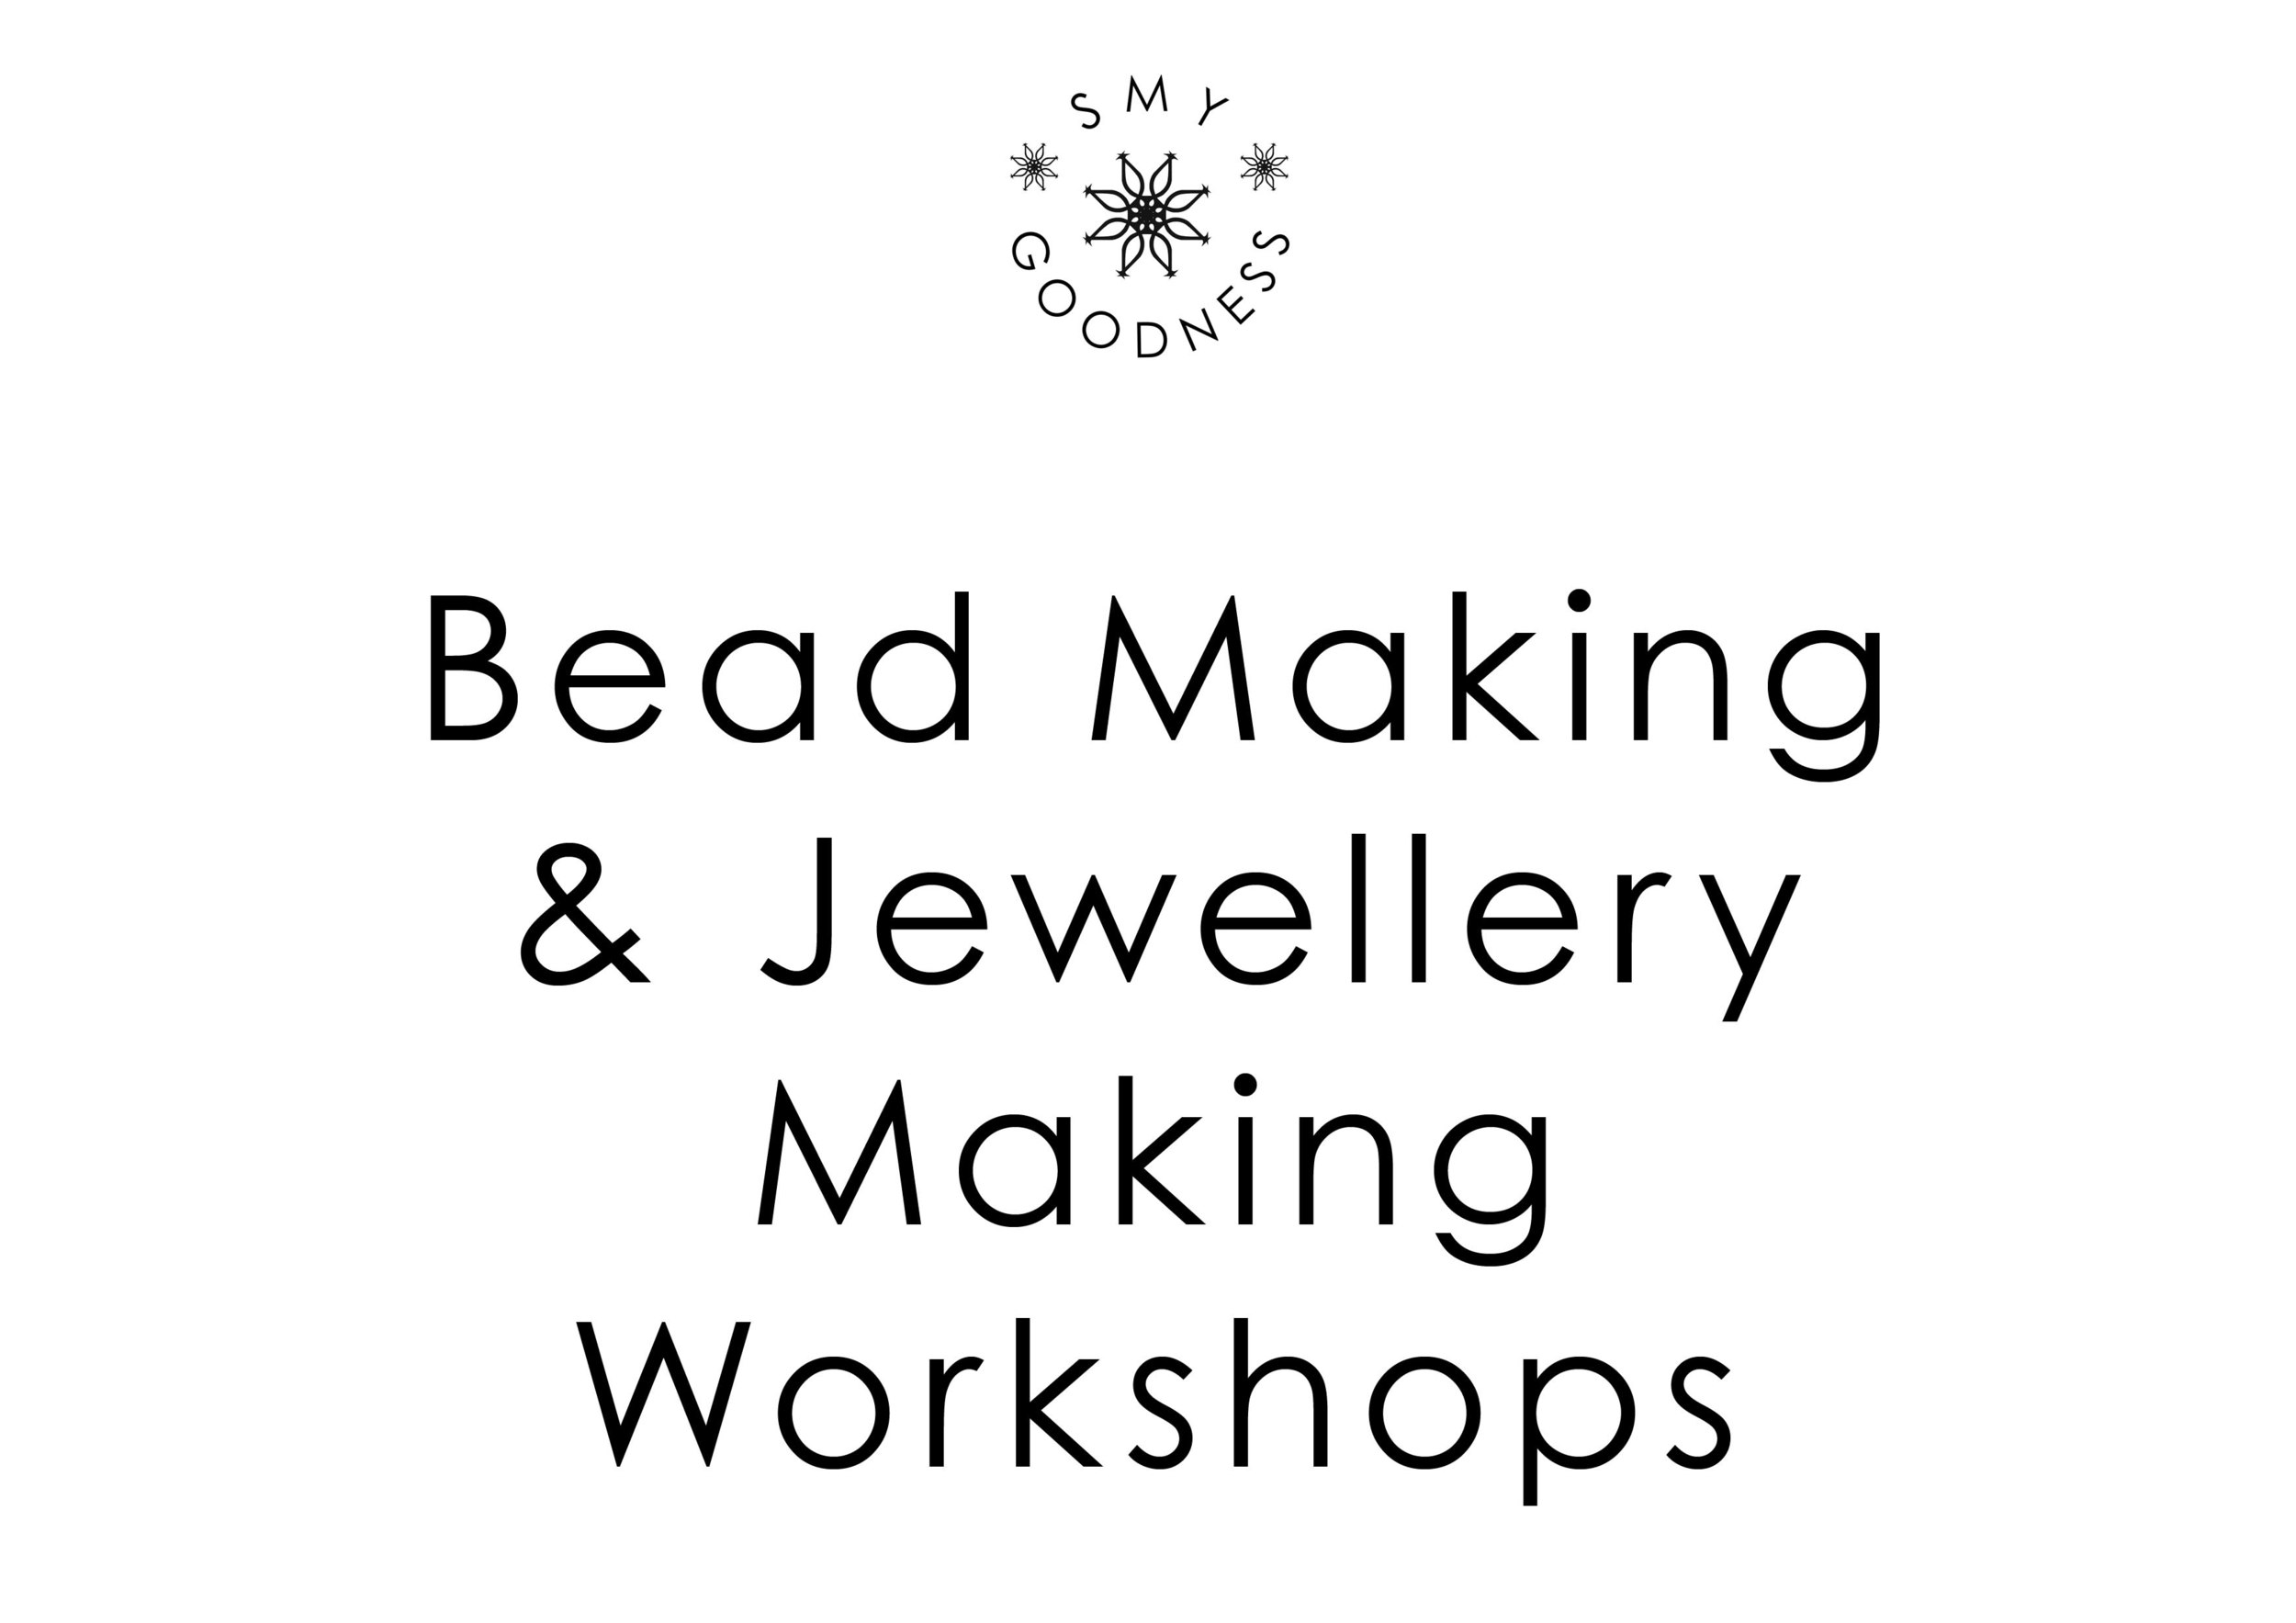 Bead Making & Jewellery Making Workshops